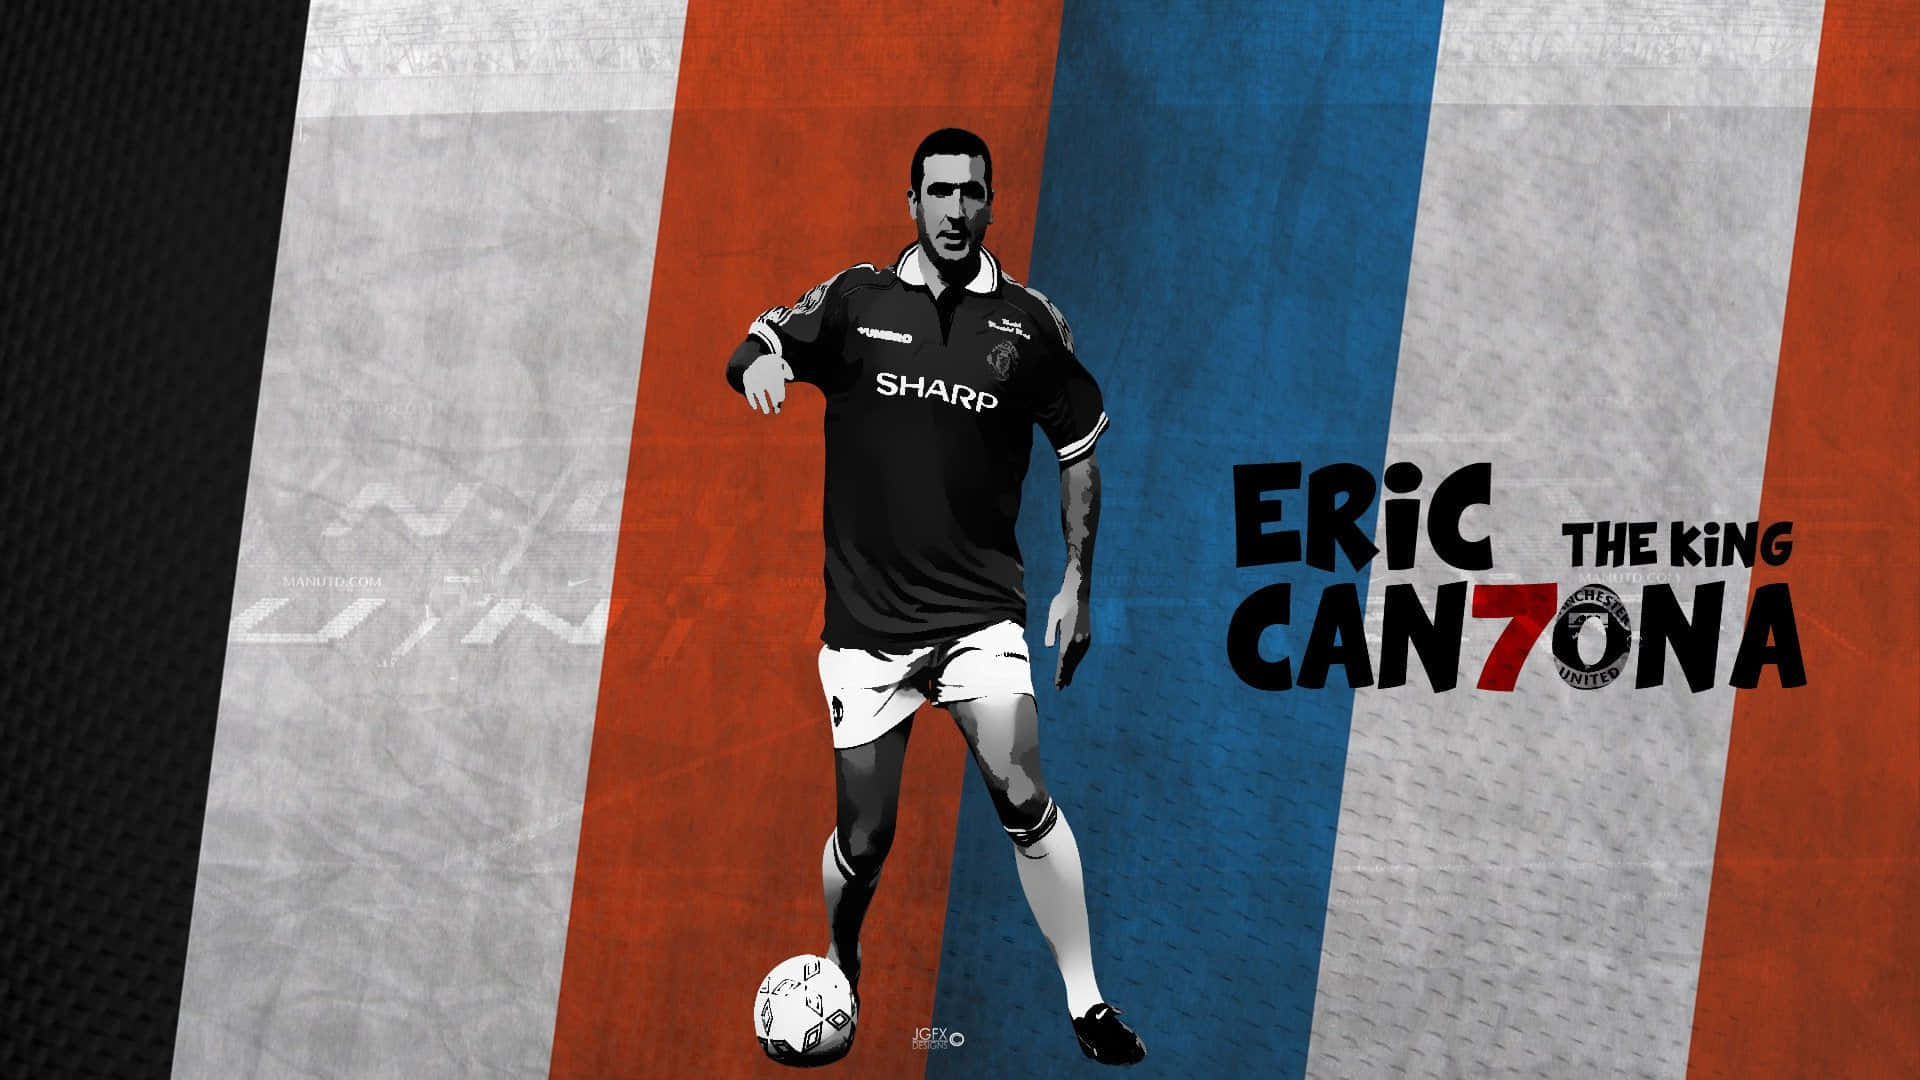 Eric Cantona 1920 X 1080 Wallpaper